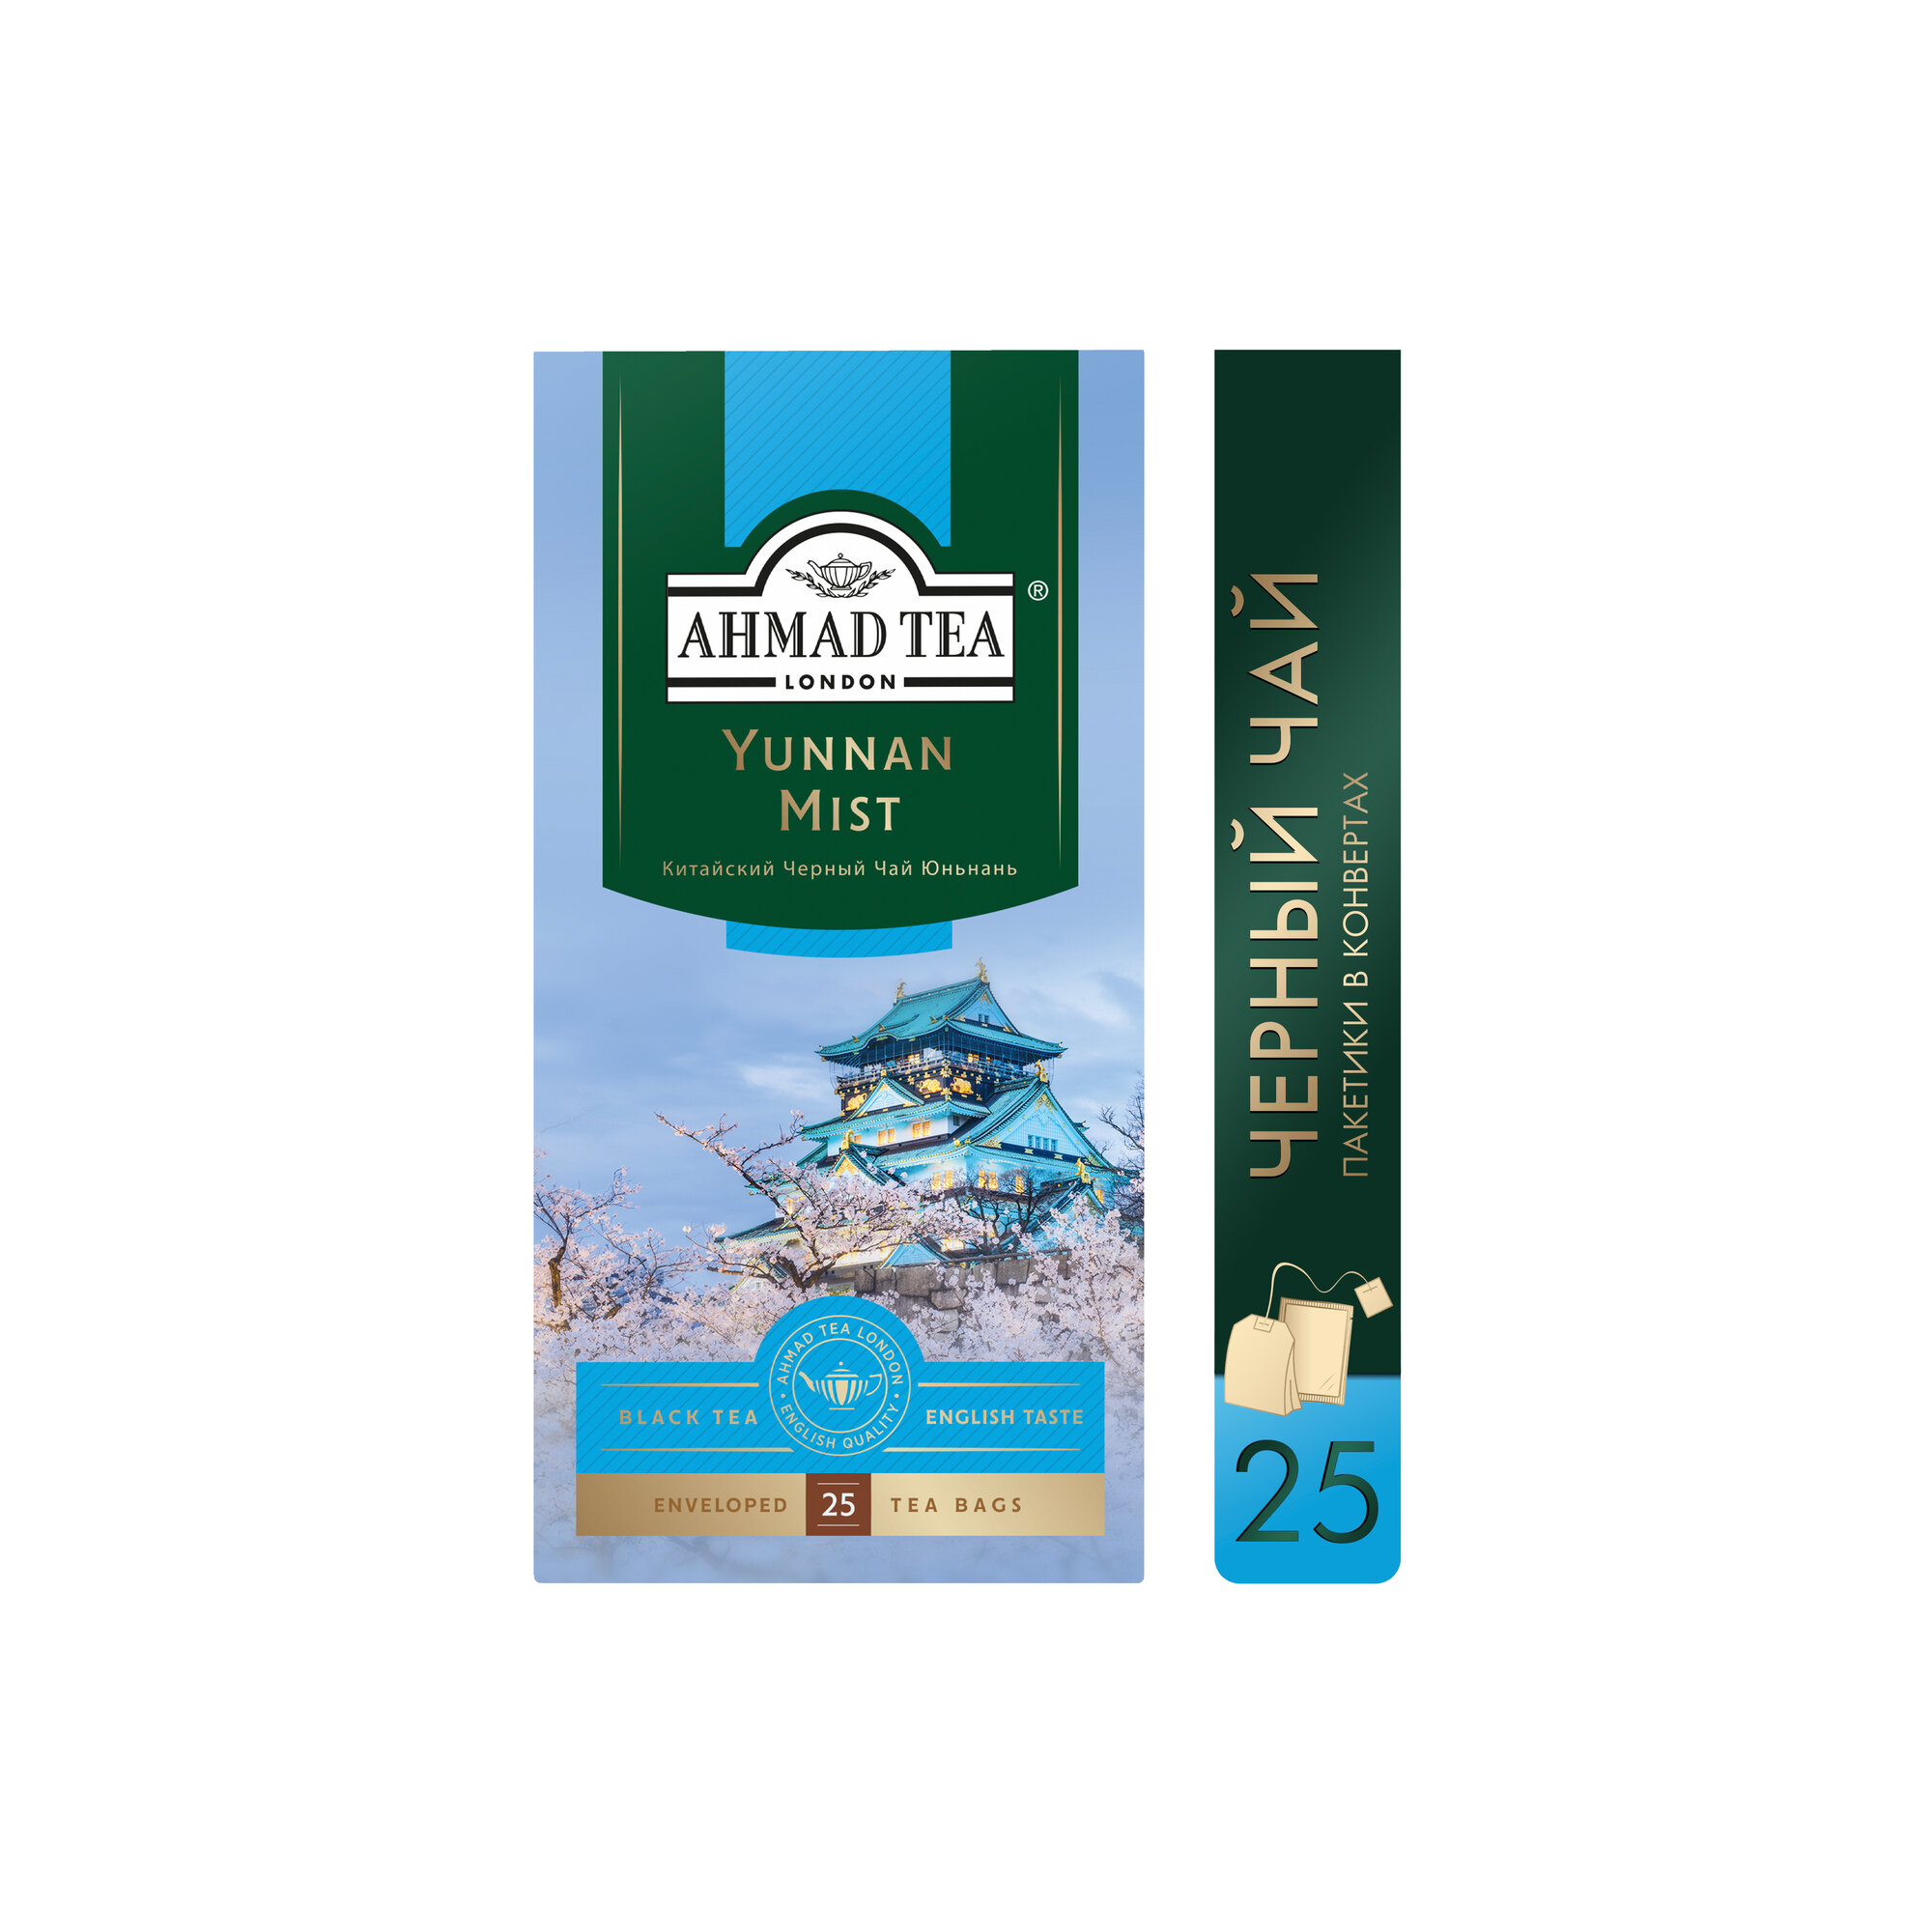 Чай черный Ahmad tea Yunnan mist в пакетиках, 25 пак.